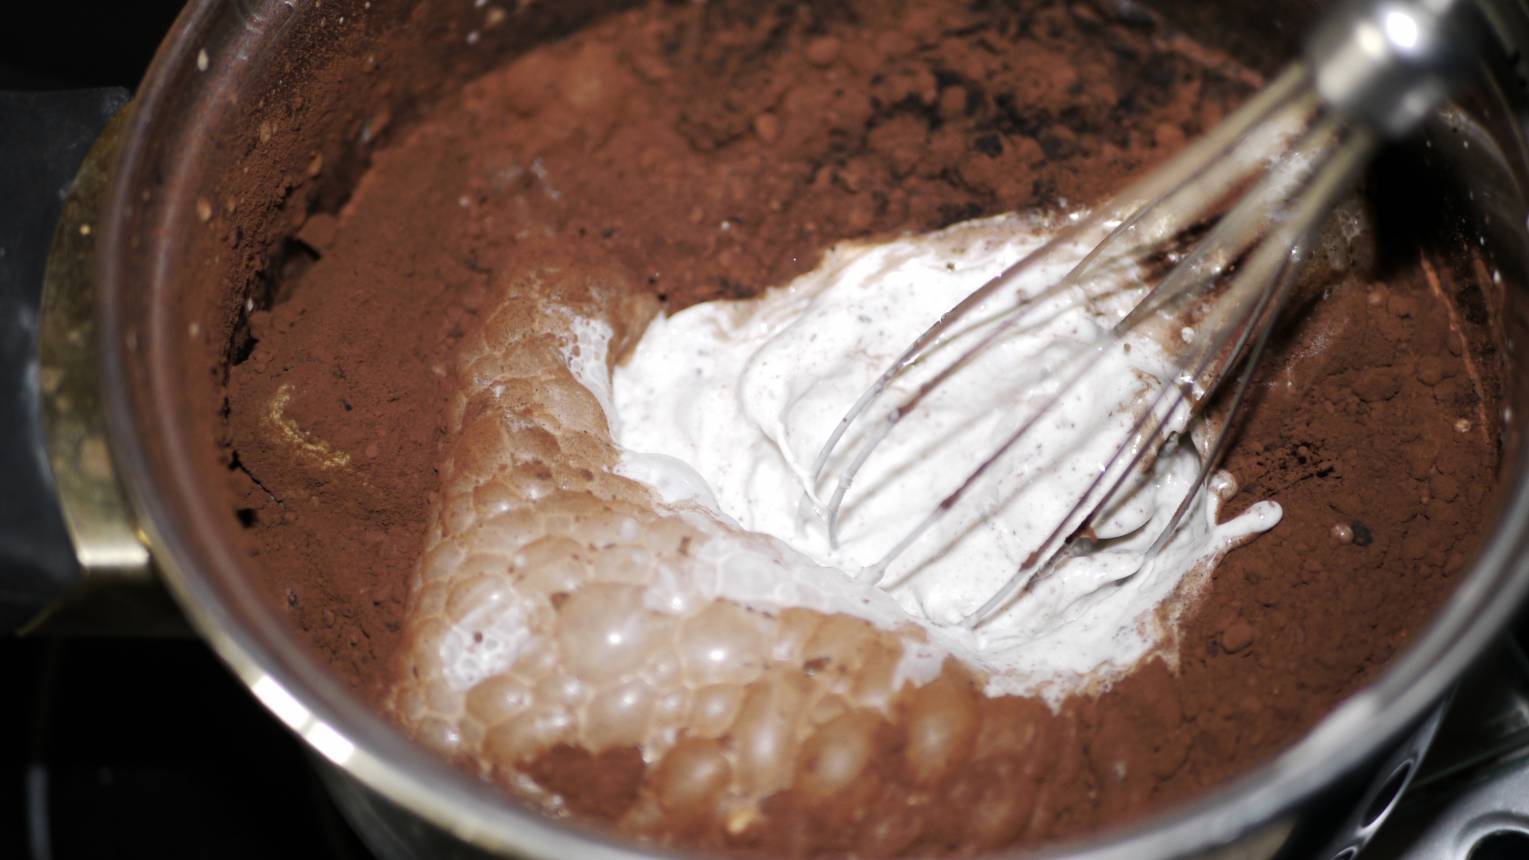 Kézműves fagylalt készítő tanfolyam - adalékanyagmentesen finomat 5